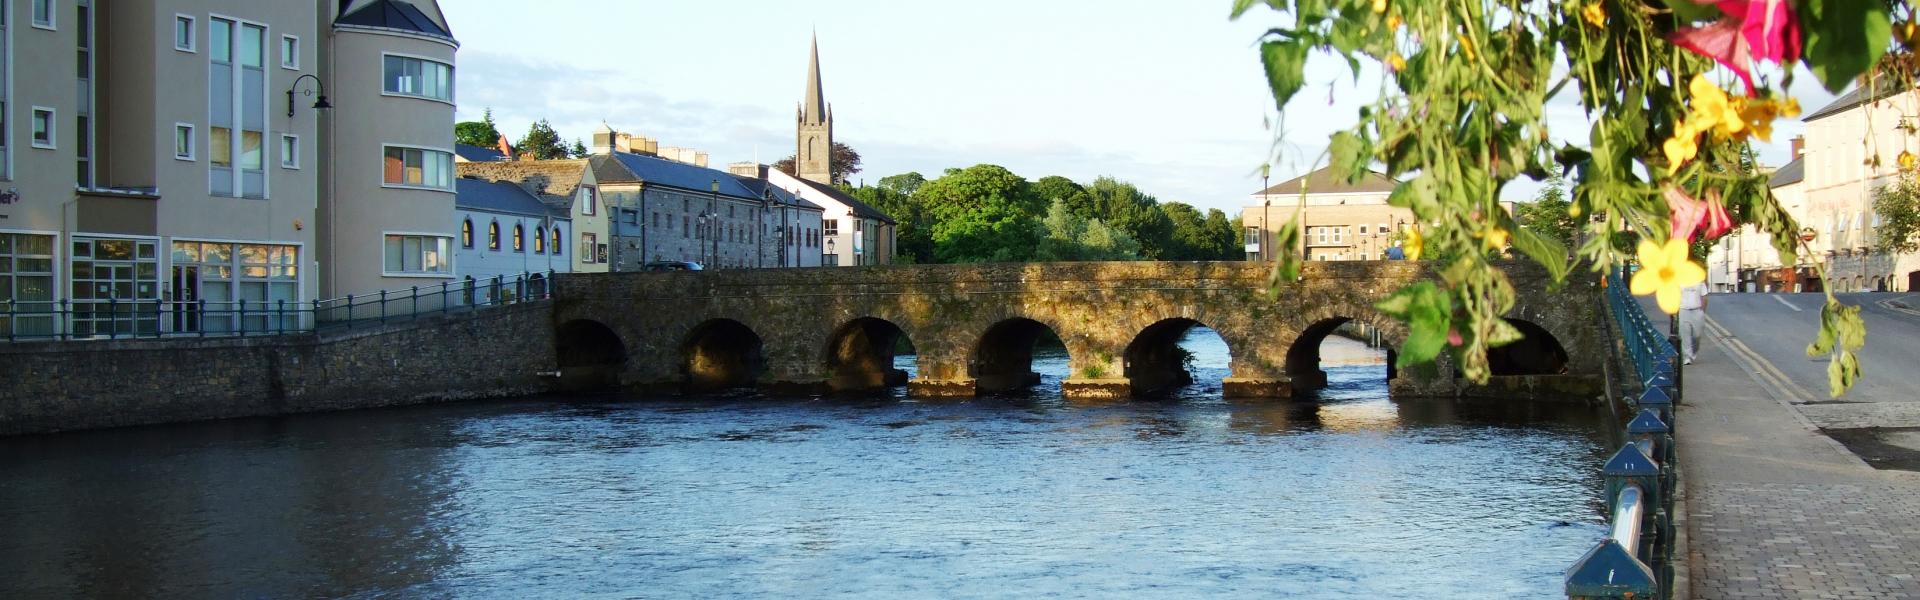 Holiday lettings & accommodation in Sligo - HomeToGo